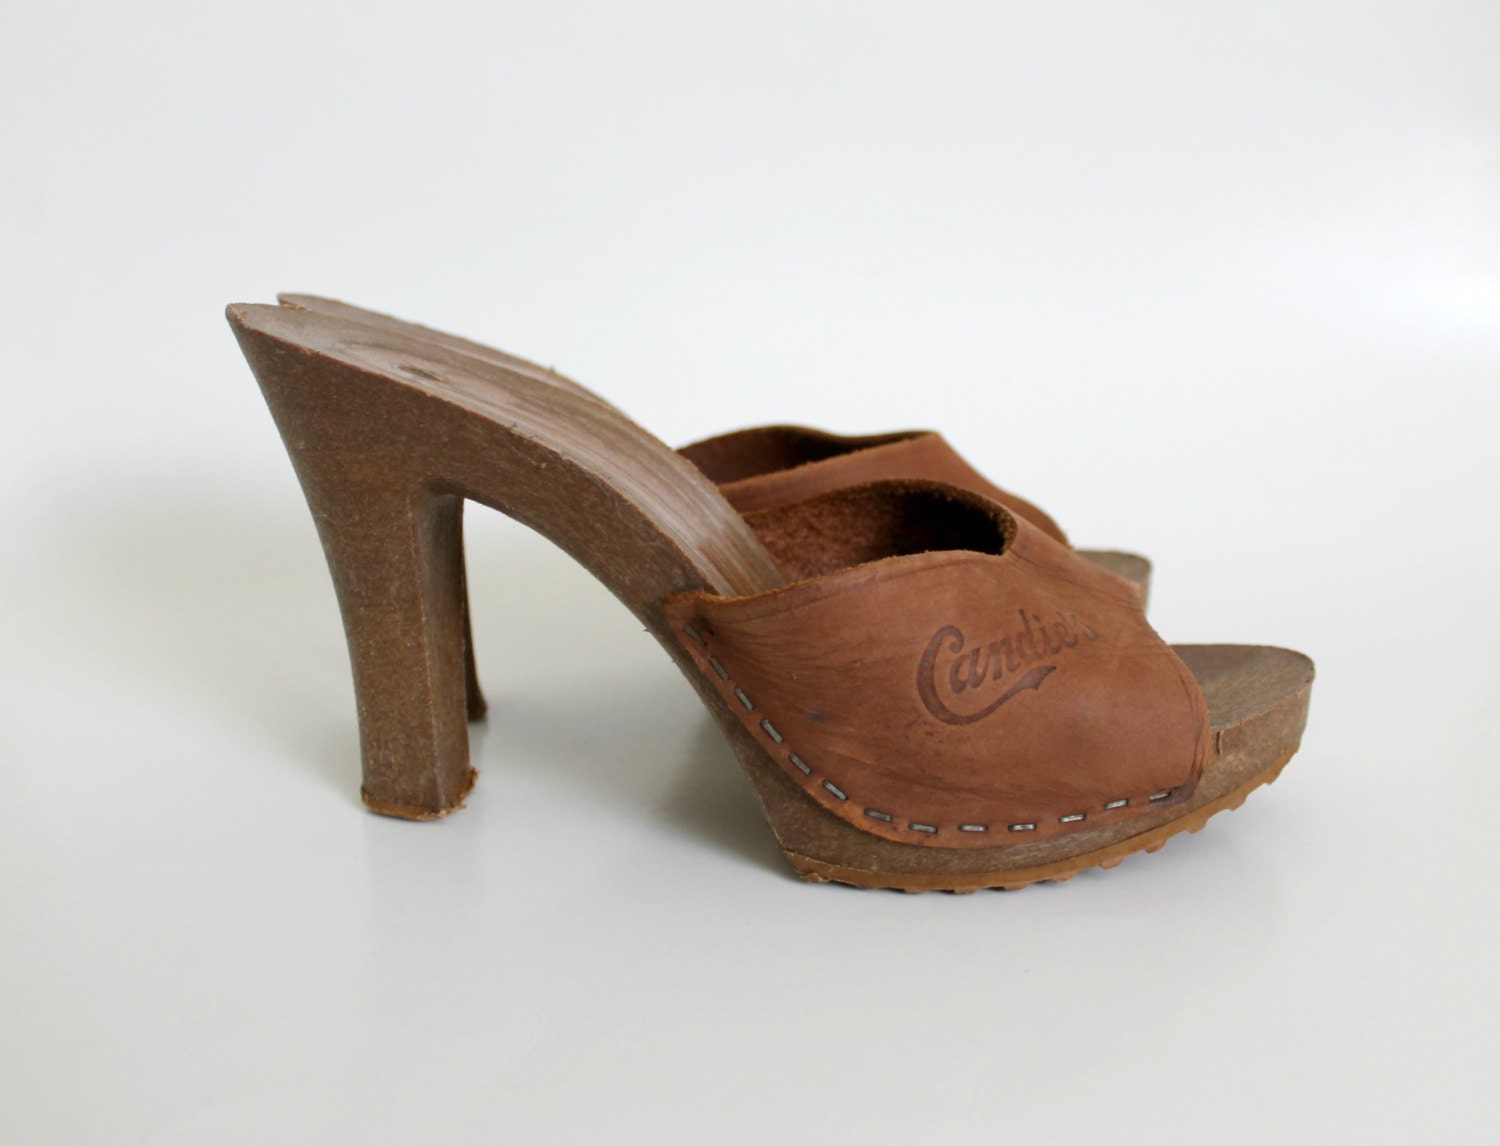 Vintage Platform Shoes / Platform Sandals / Wooden Heels / | Etsy